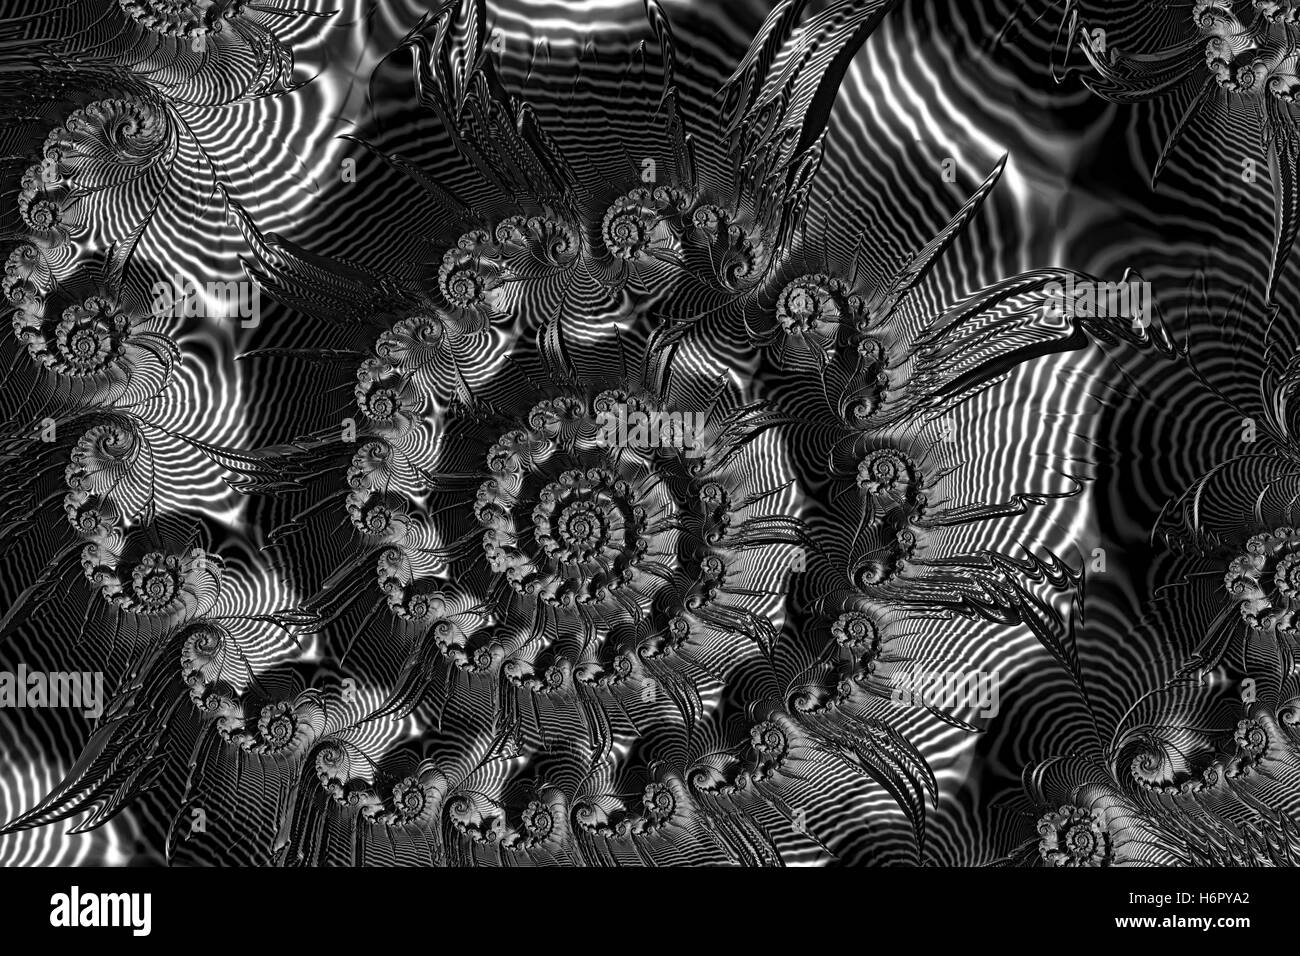 Résumé - spirale rayures image générée numériquement Banque D'Images